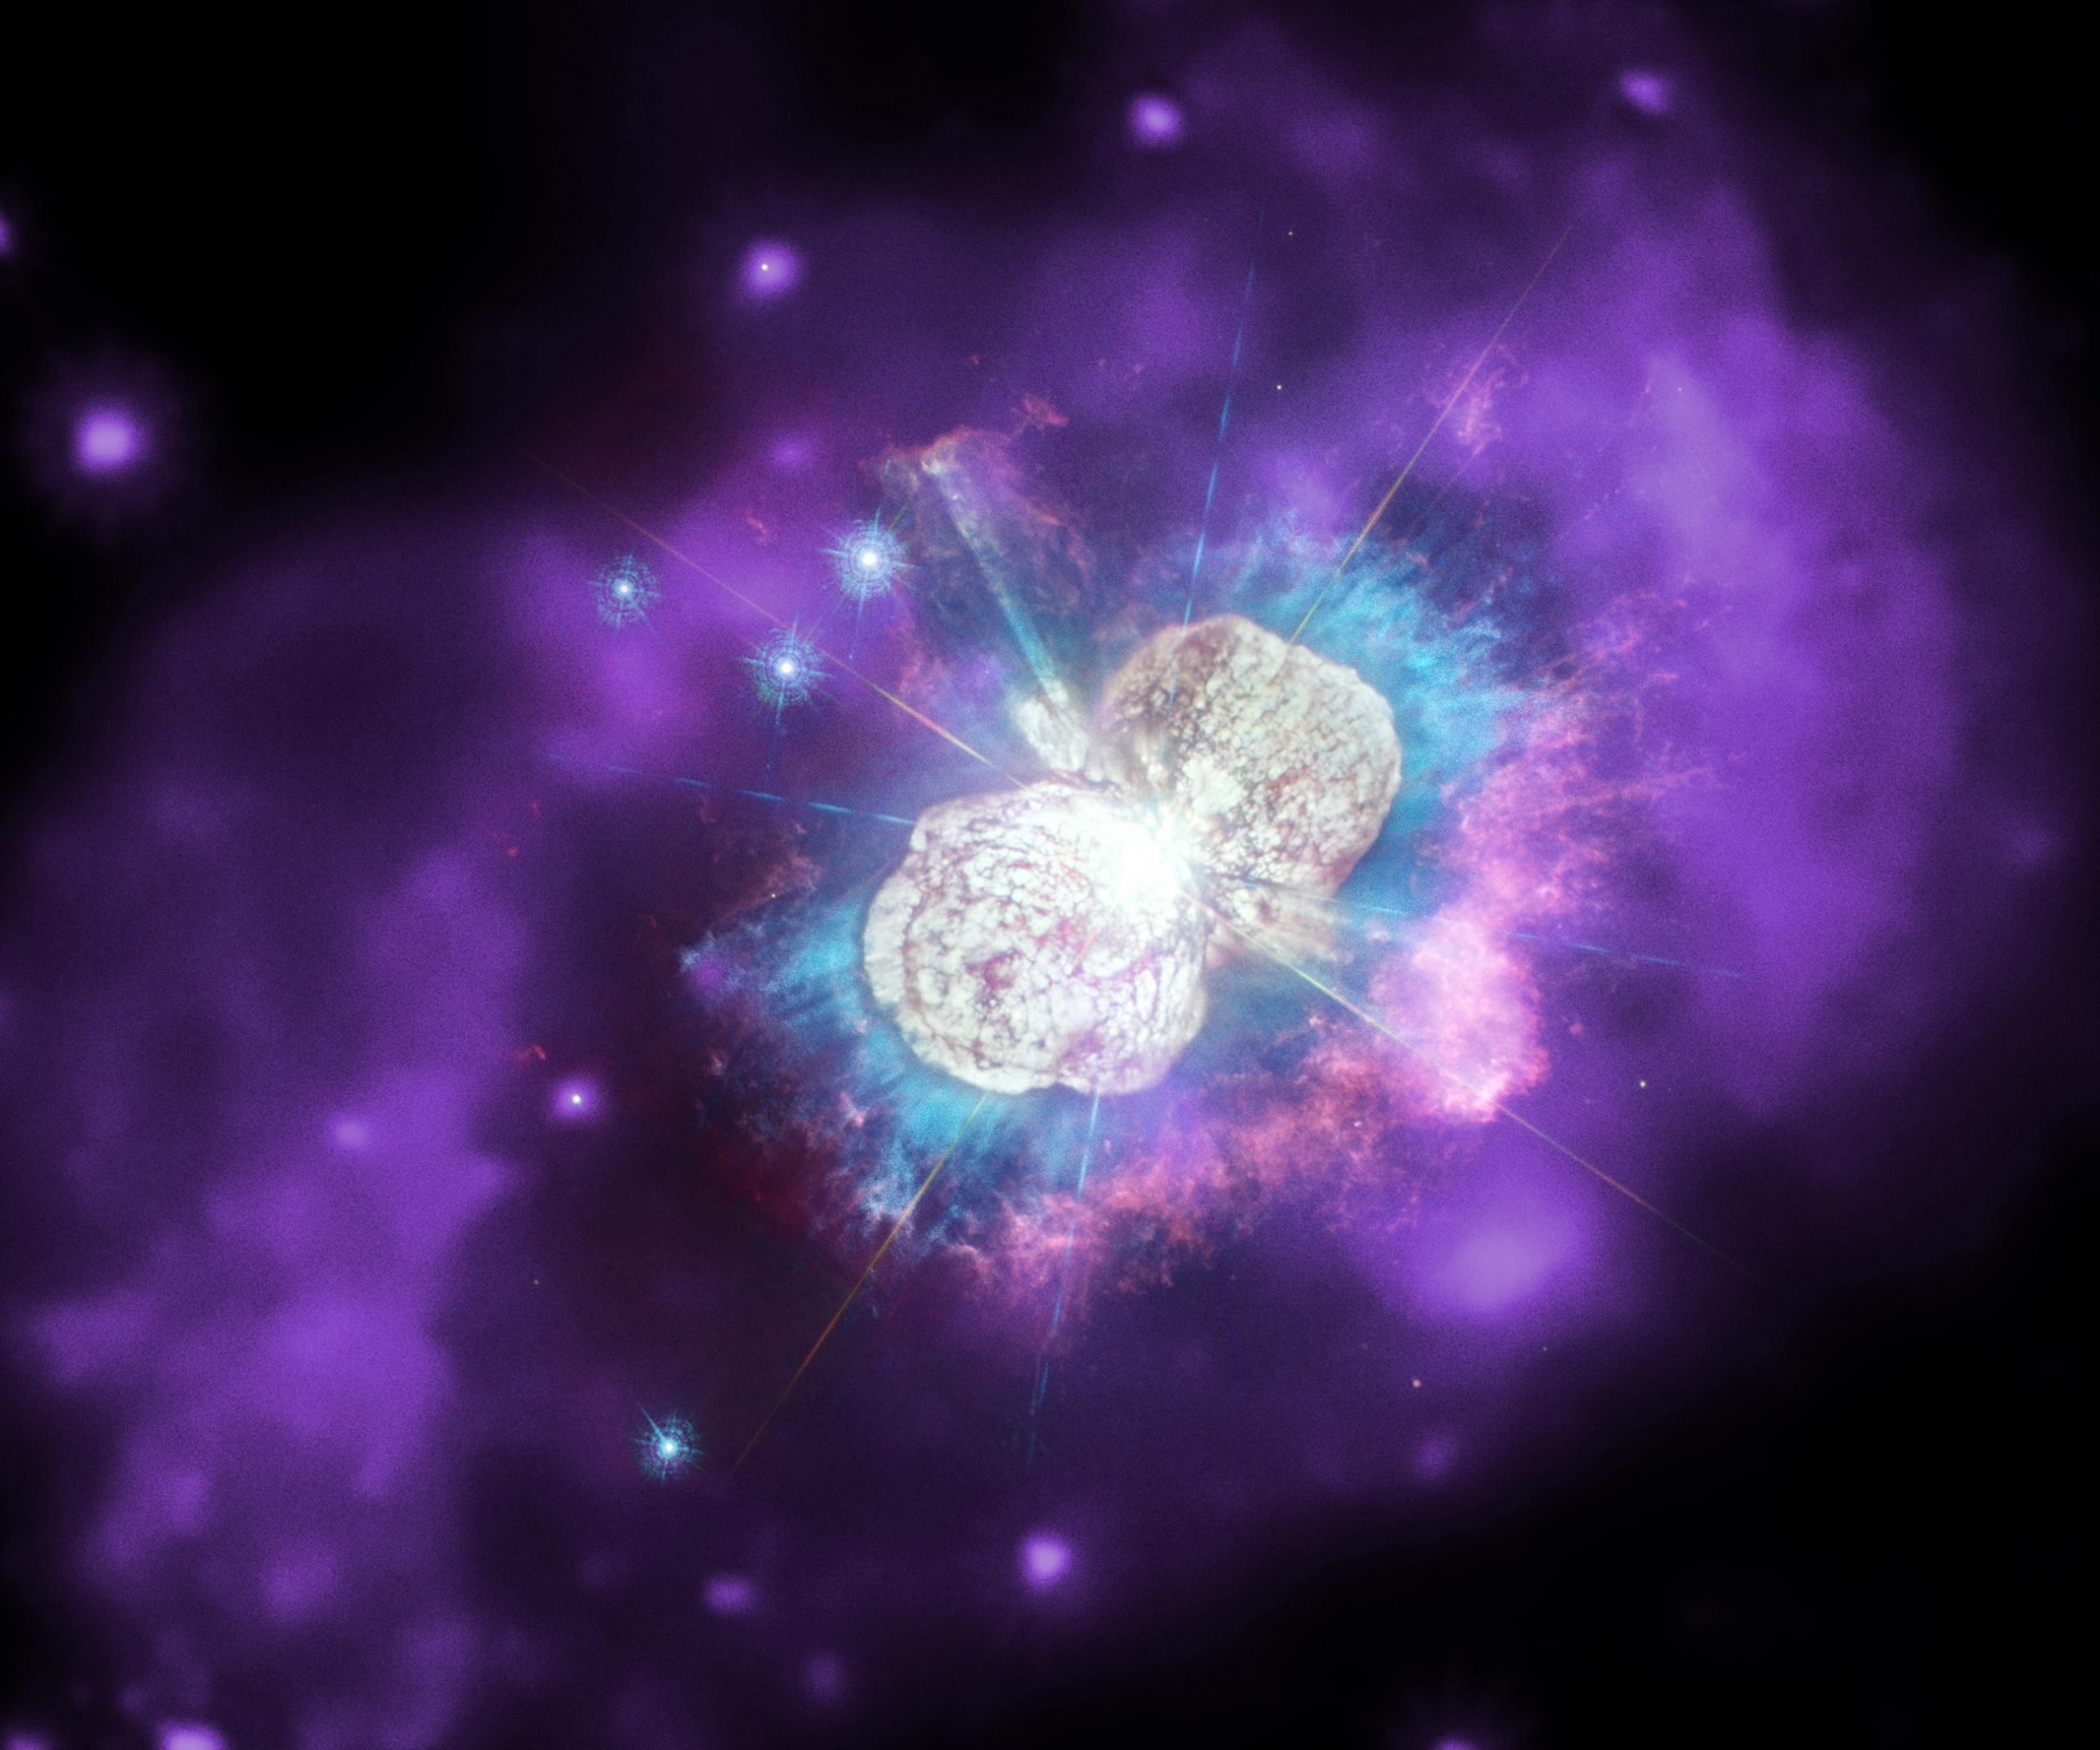 明亮的宇宙伽马射线暴可能揭示出奇怪的星际“结点”-第1张图片-IT新视野